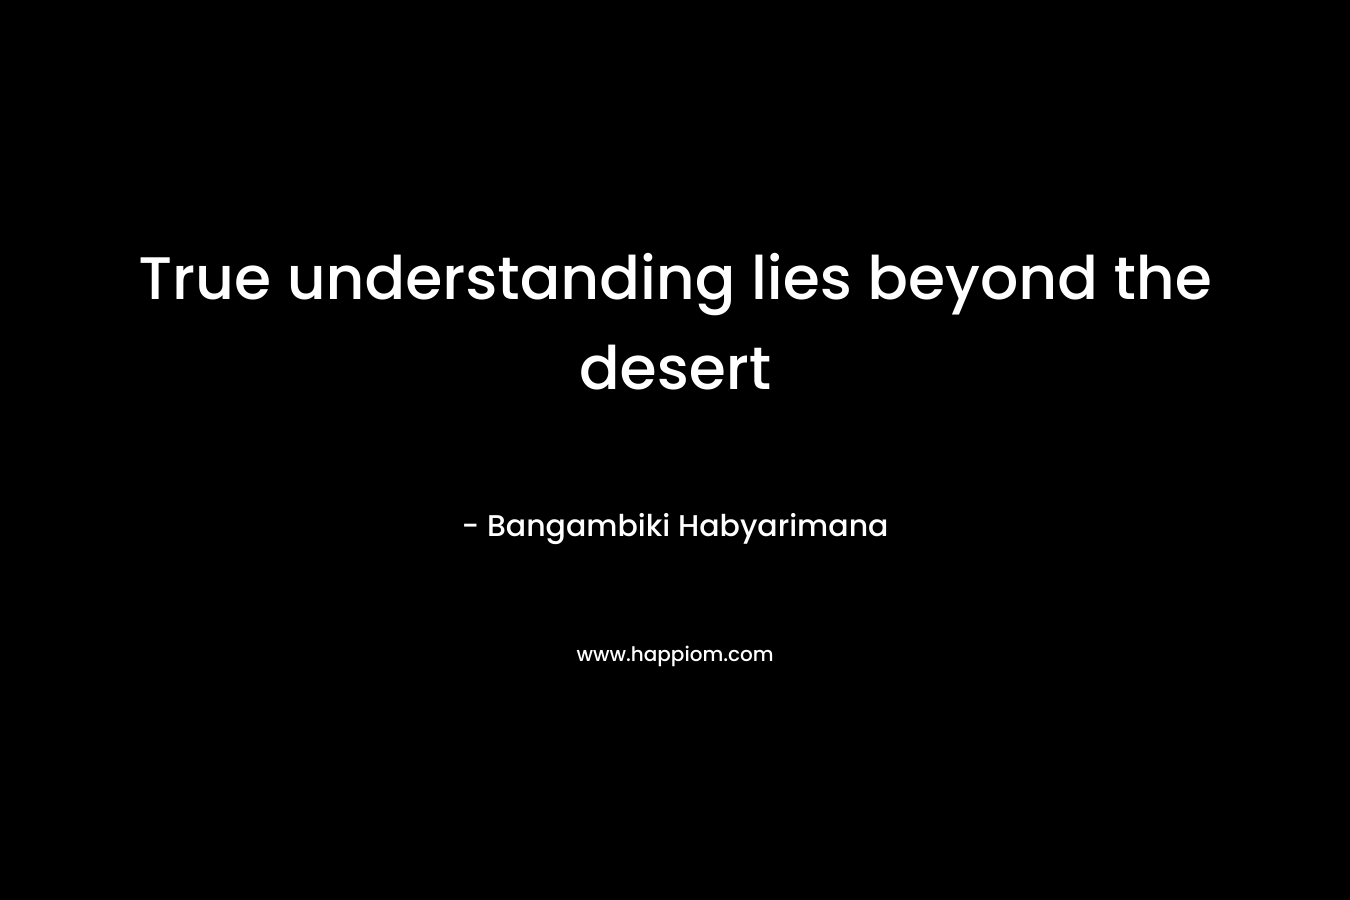 True understanding lies beyond the desert